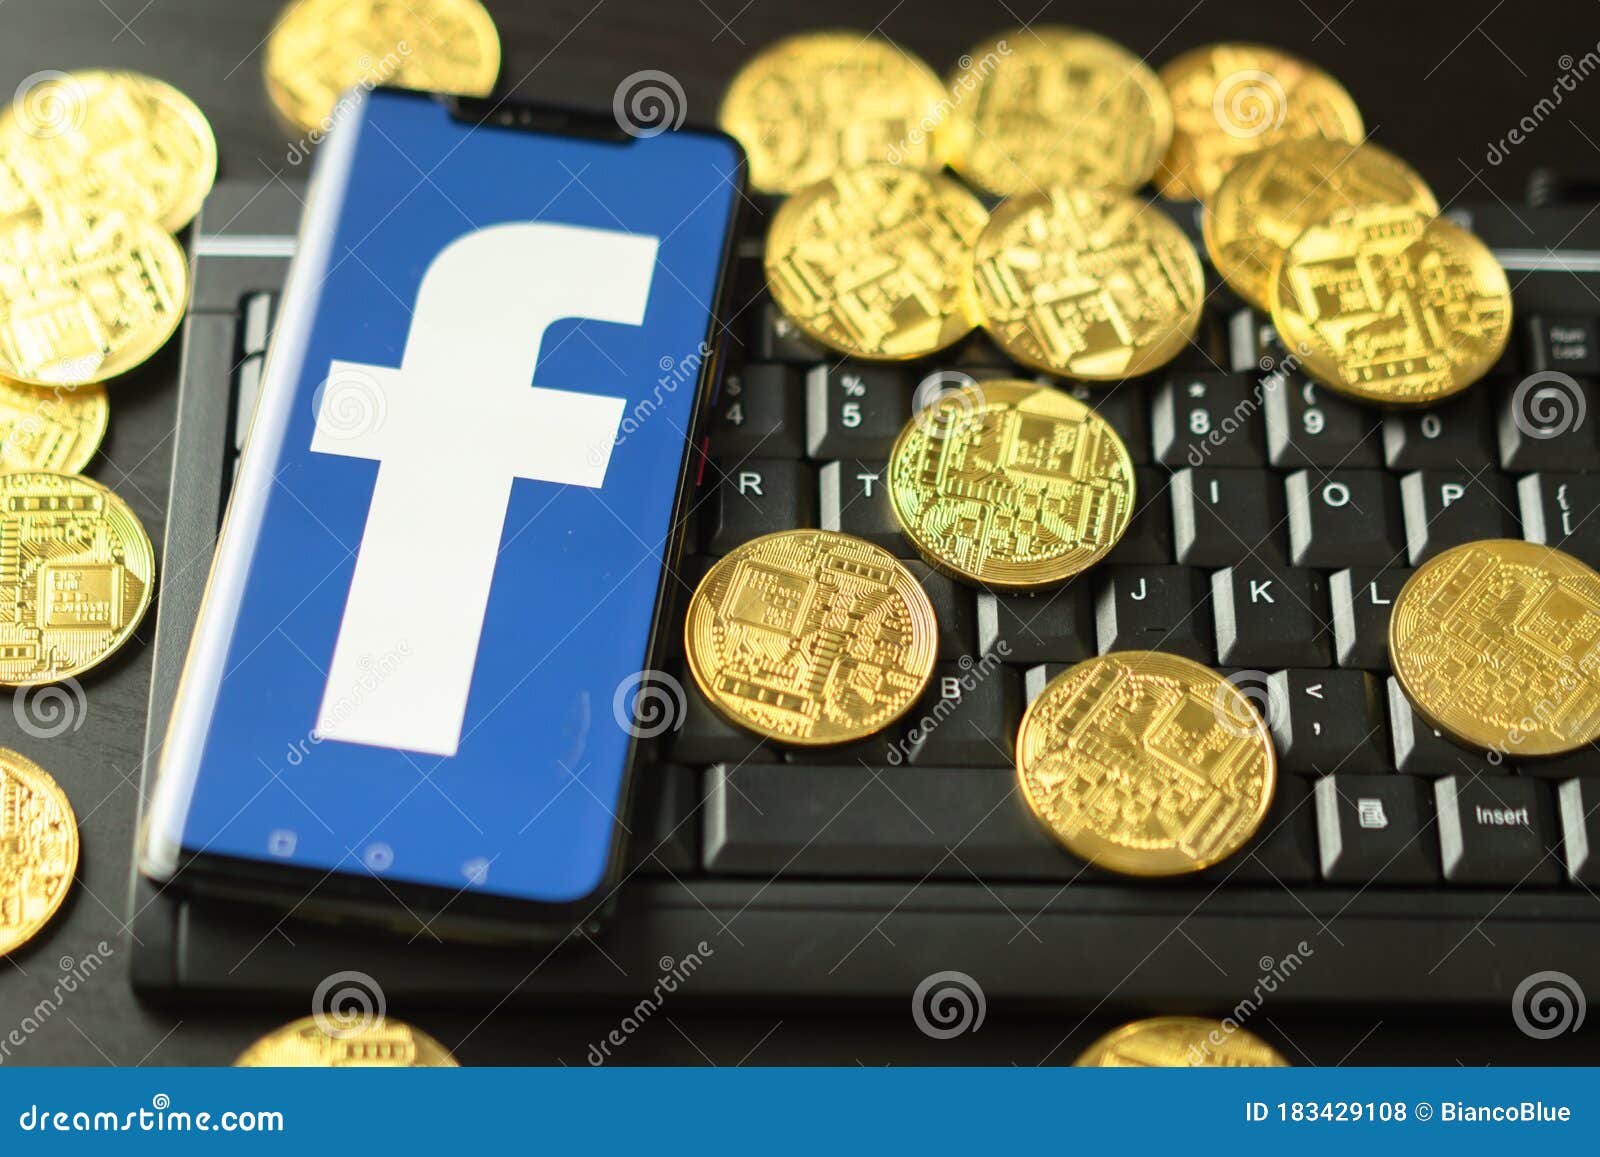 bitcoin thai market facebook